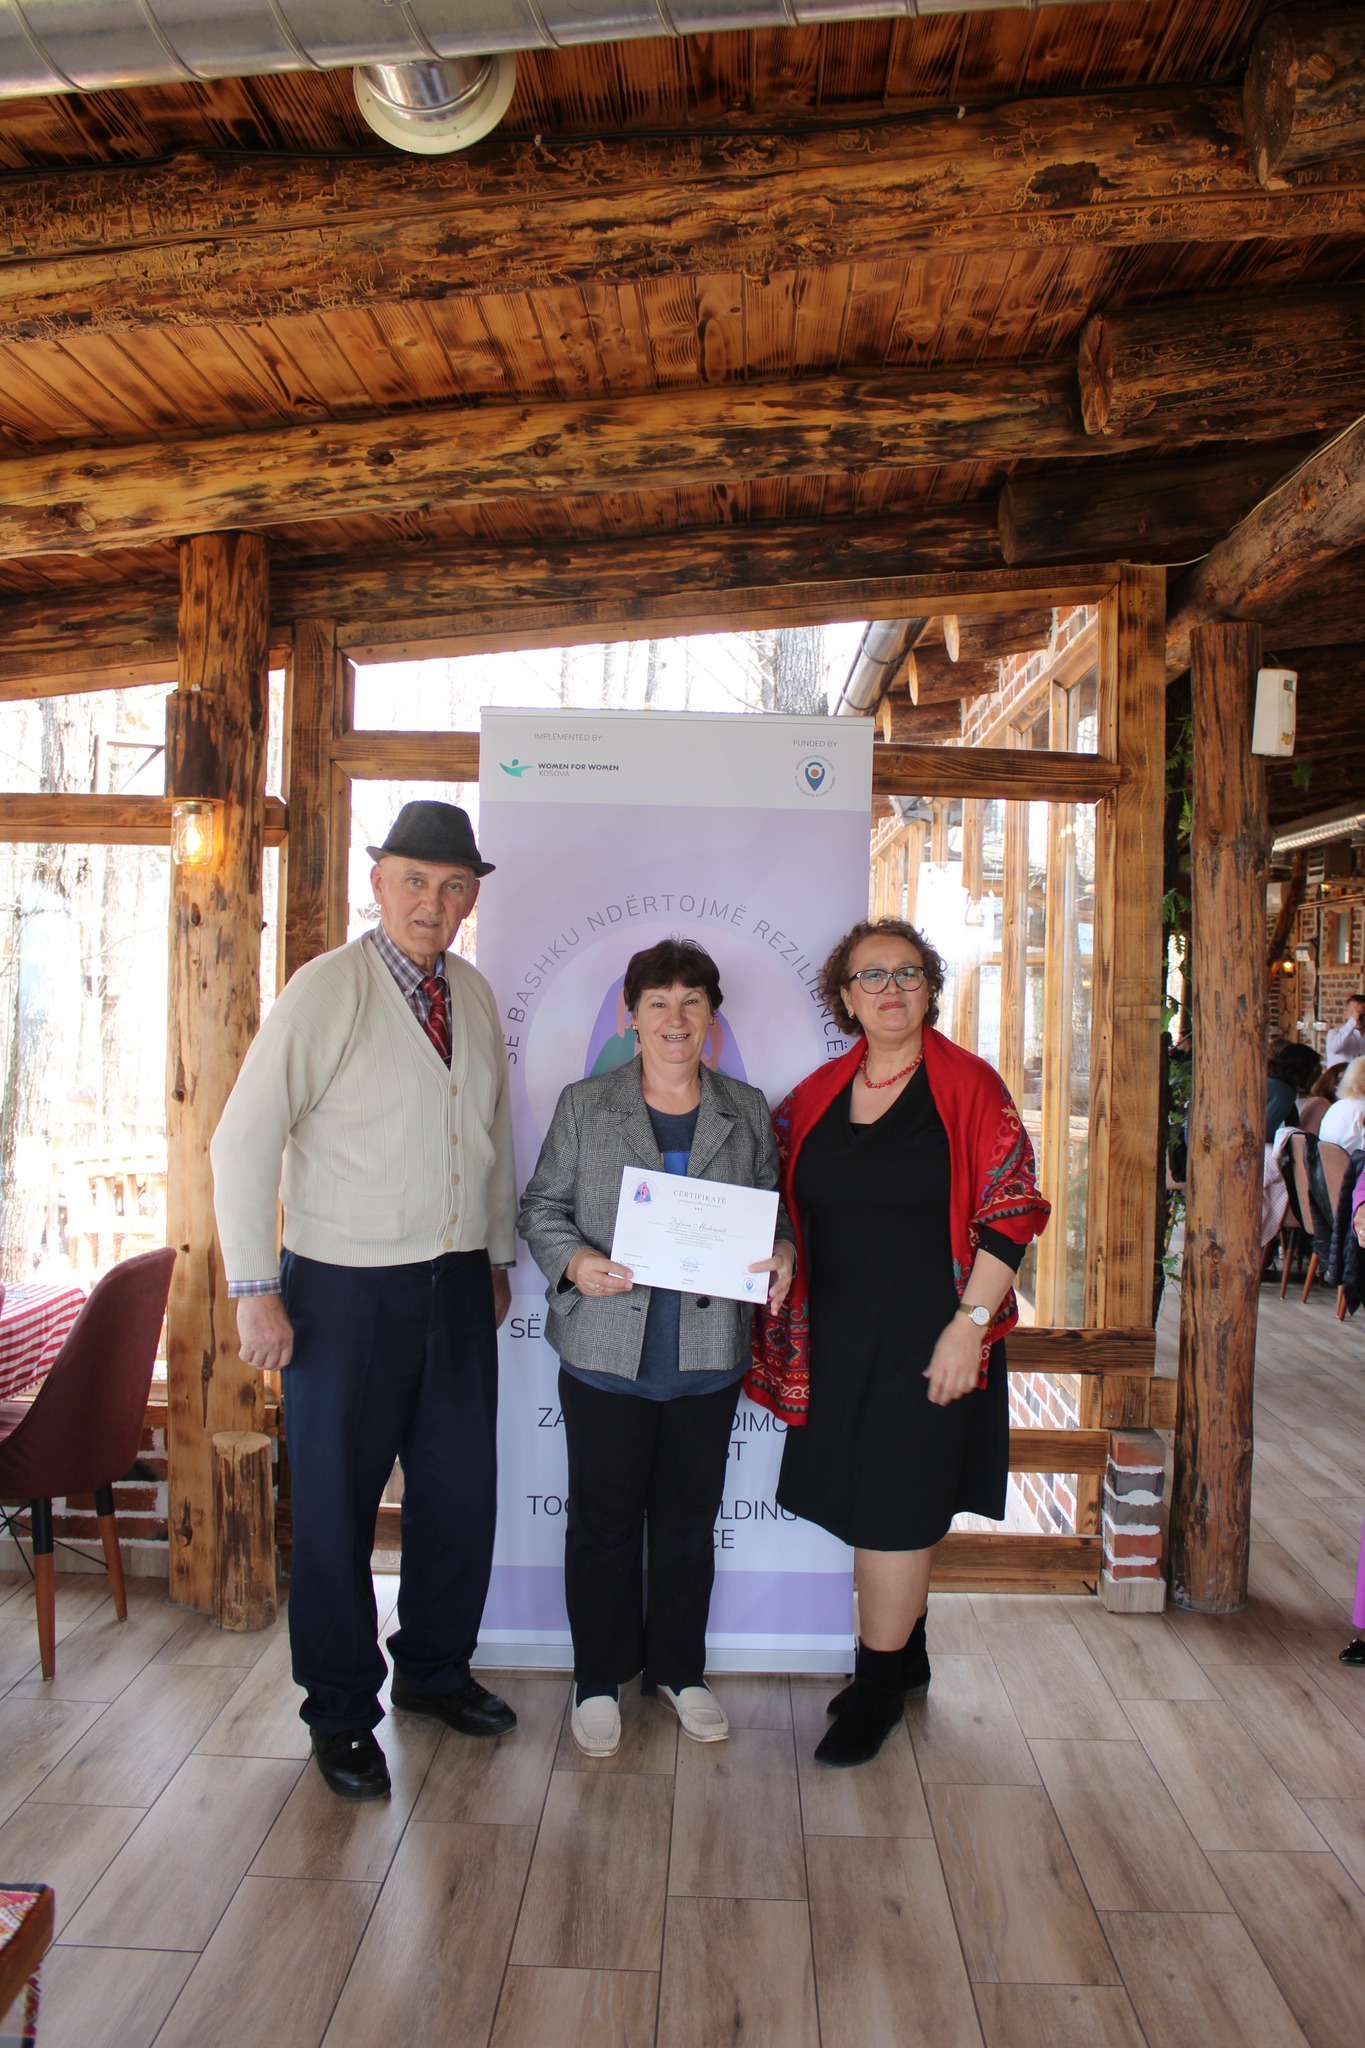 Ceremonia e diplomimit për gratë në fshatin Rahovicë në komunën e Ferizajit